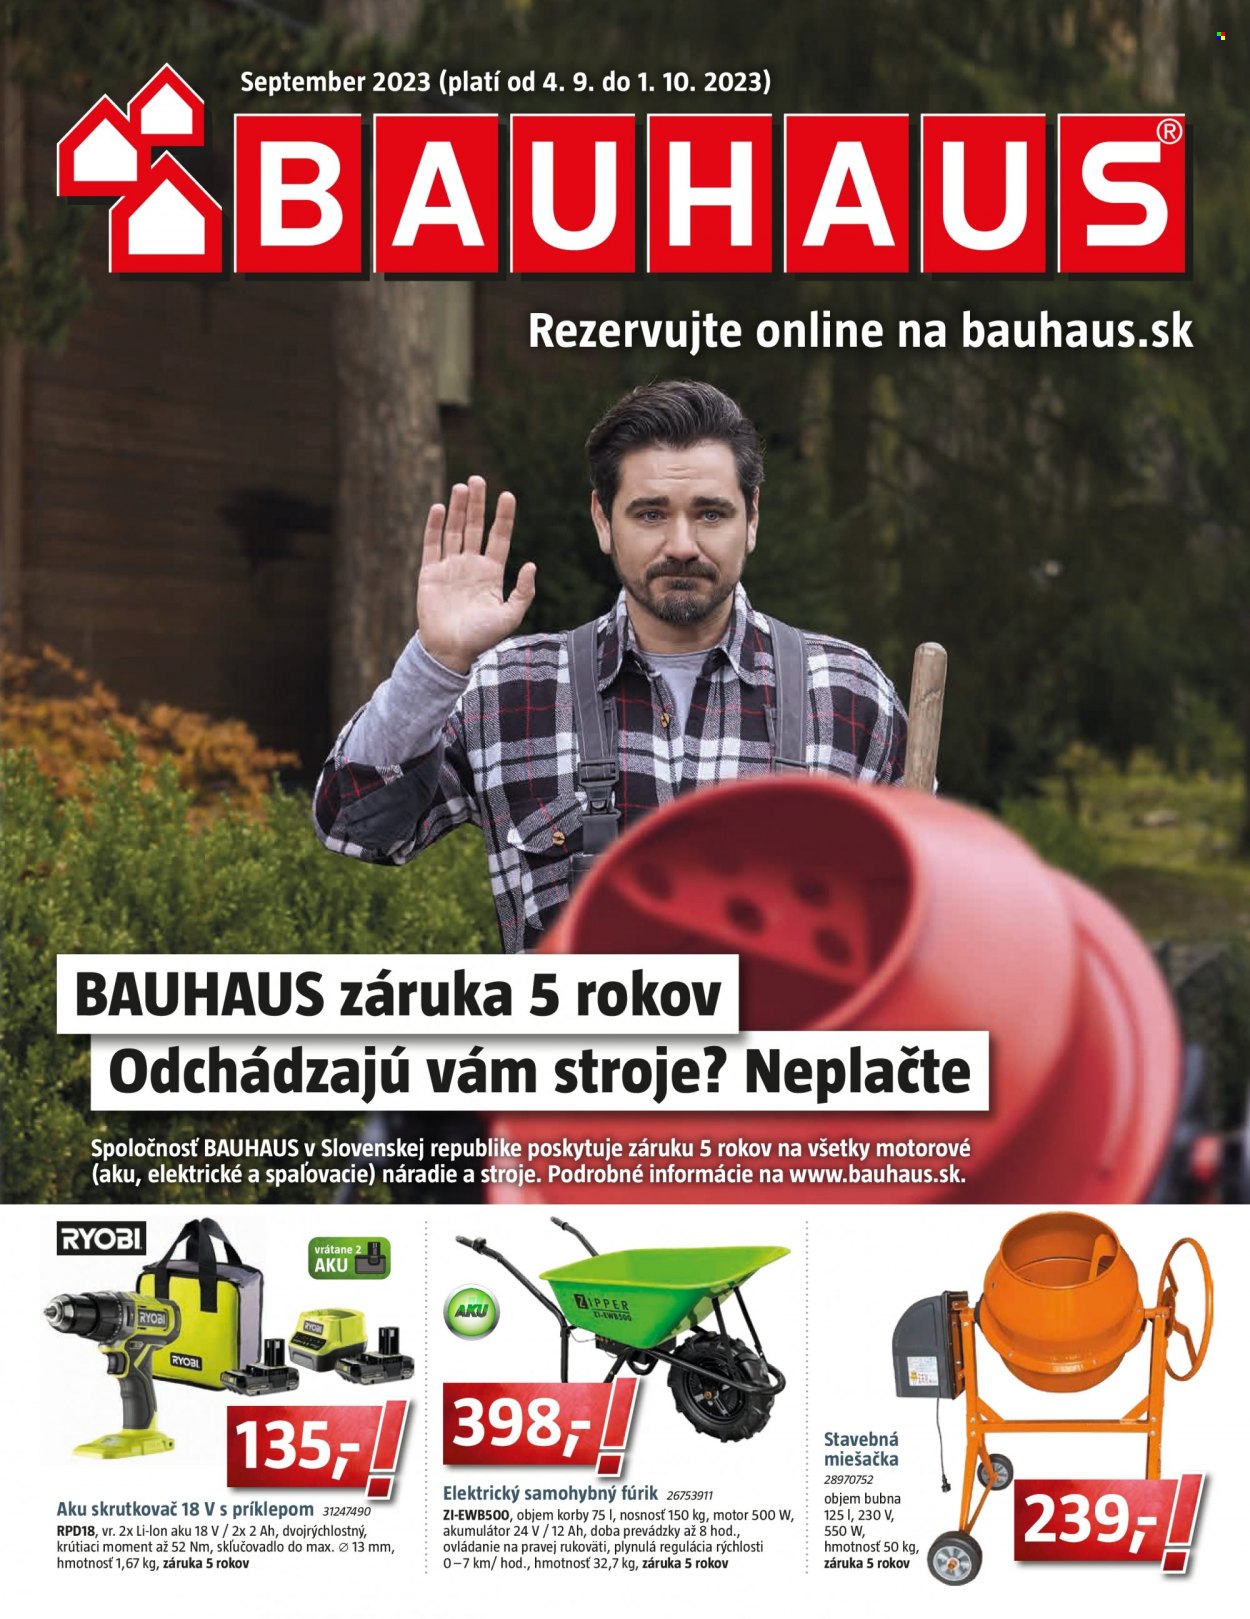 Leták Bauhaus - 4.9.2023 - 1.10.2023 - Produkty v akcii - aku skrutkovač, náradie, stavebná miešačka. Strana 1.